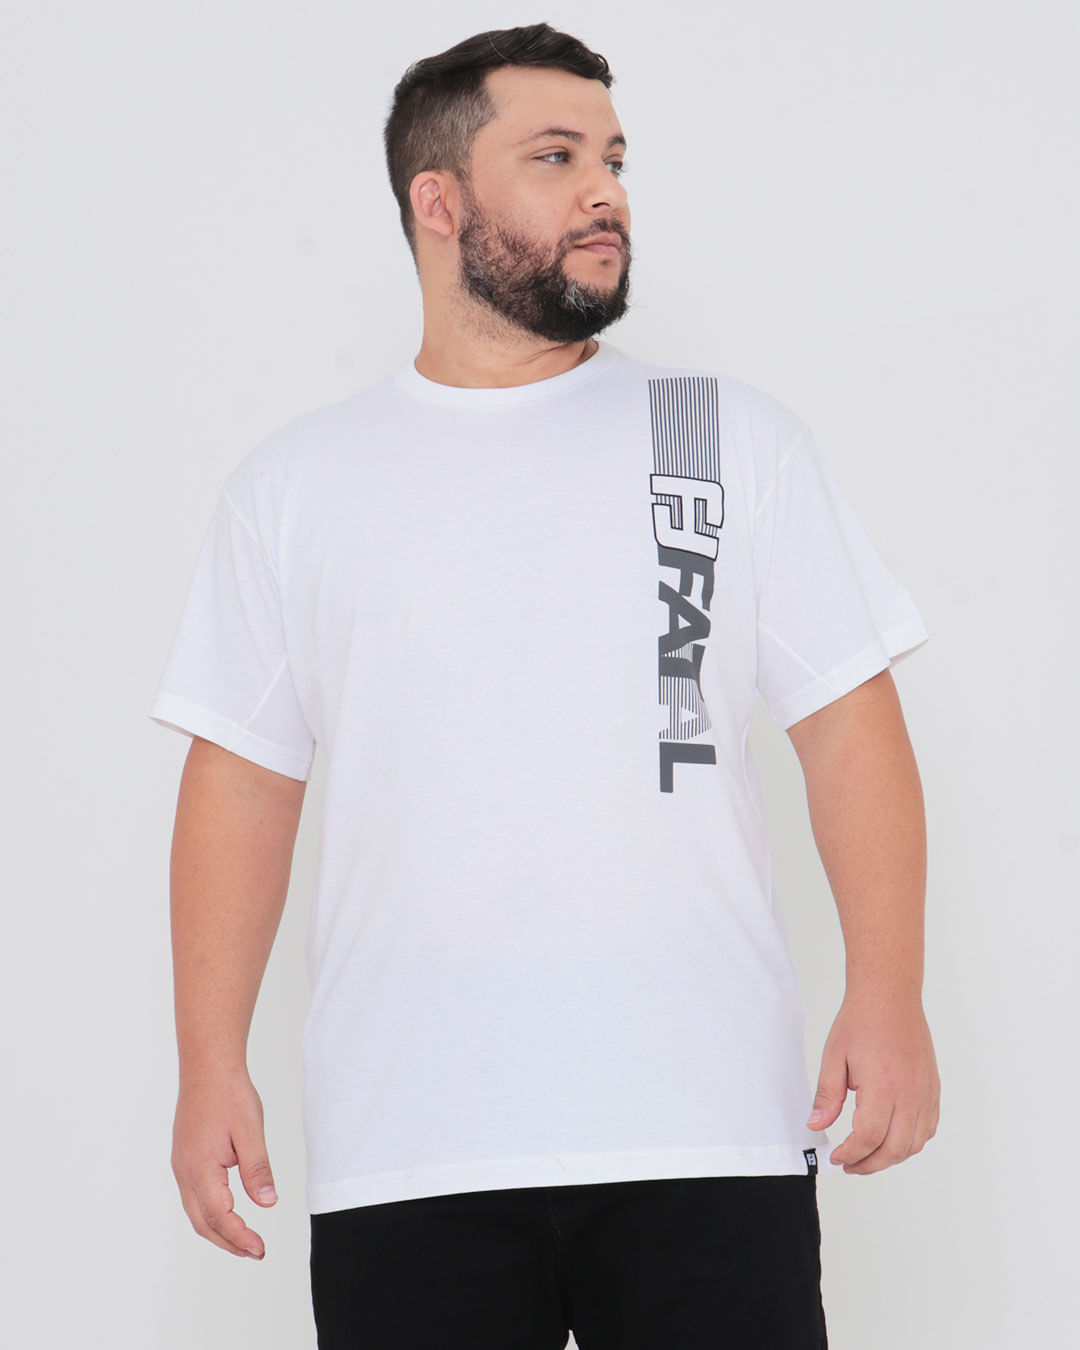 Camiseta-Plus-Size-Estampa-Fatal-Branca